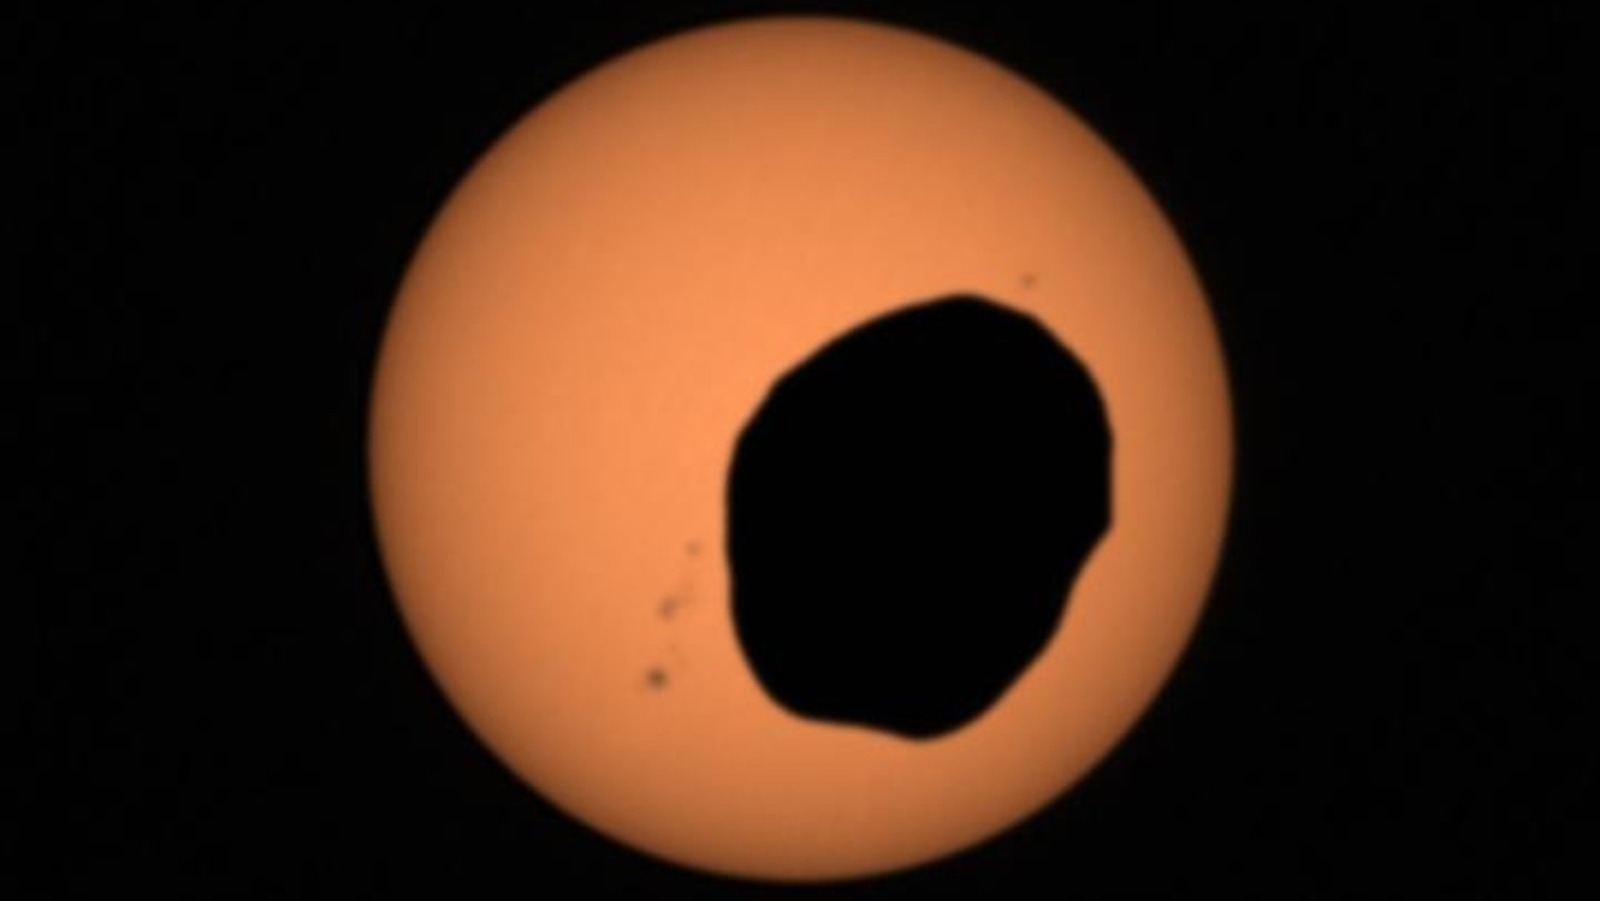 Découvrez de superbes images d'une éclipse solaire sur Mars